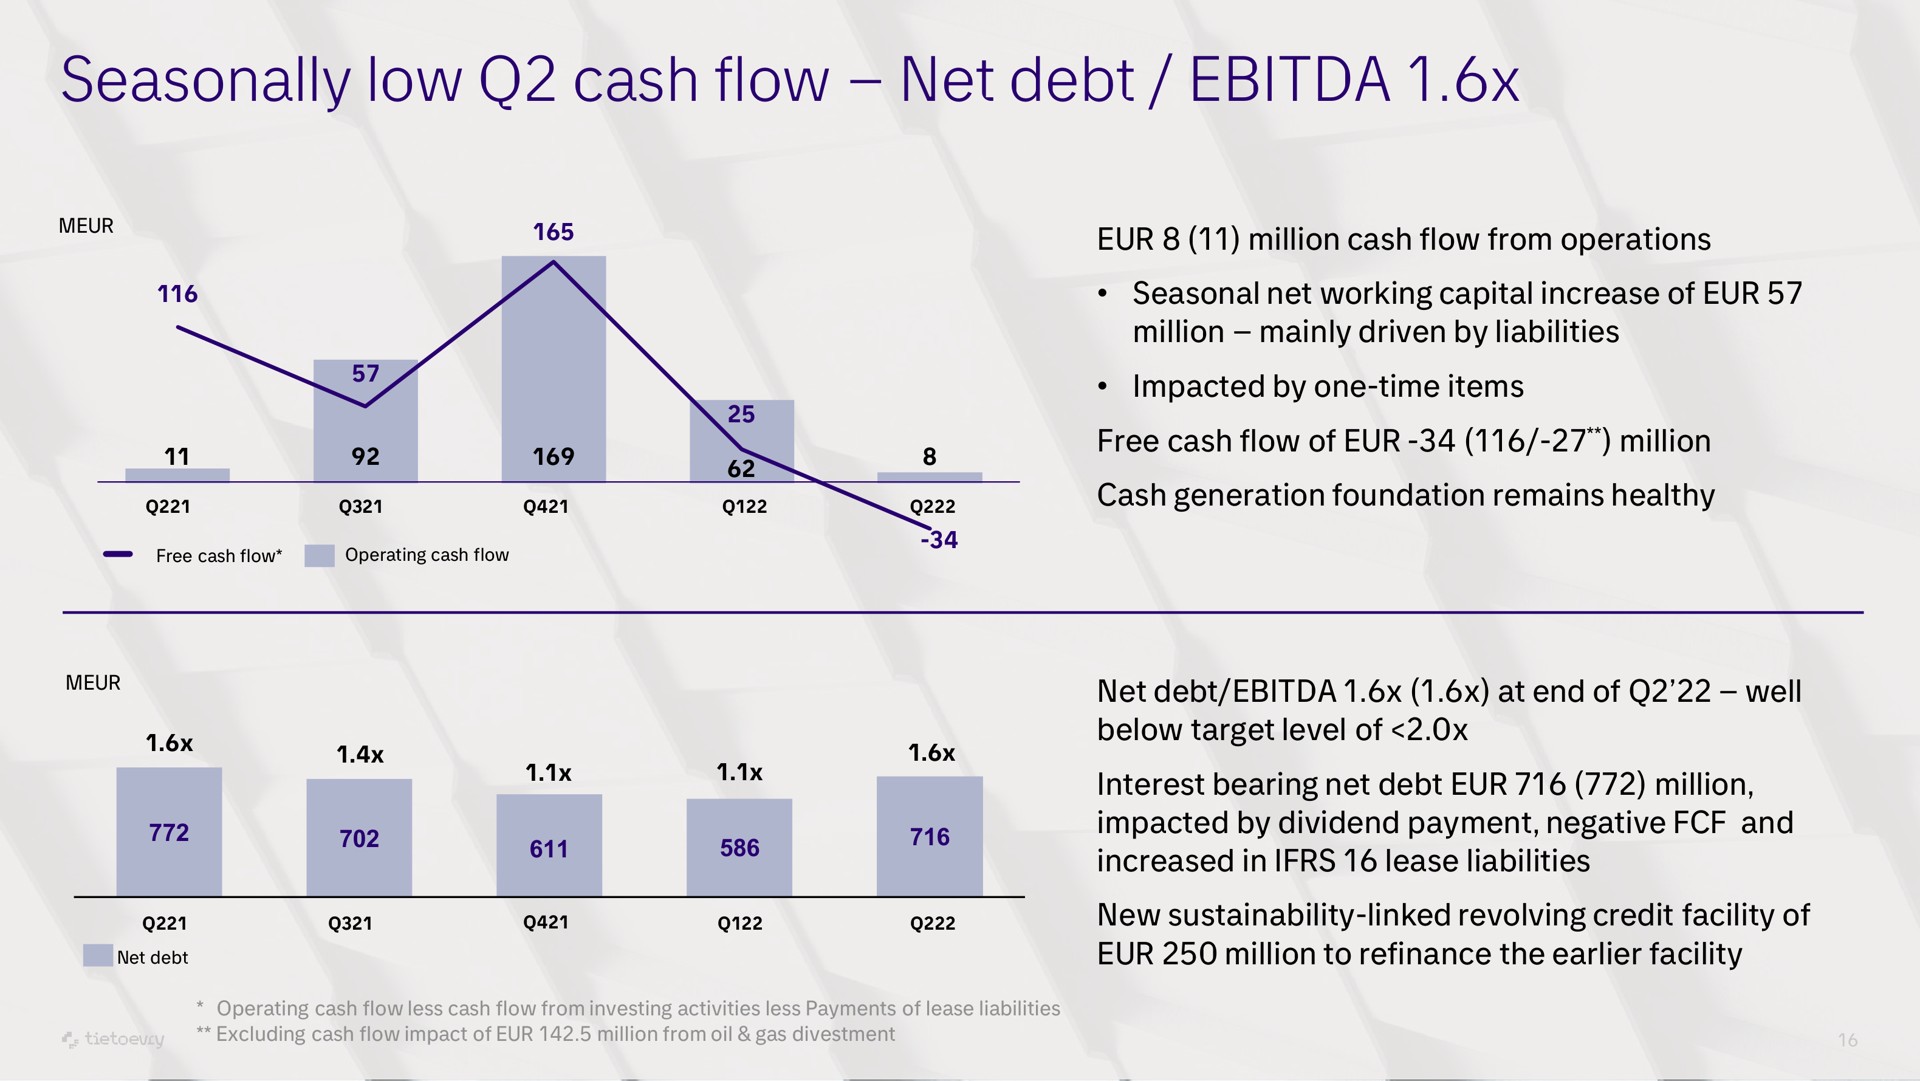 seasonally low cash flow net debt | Tietoevry